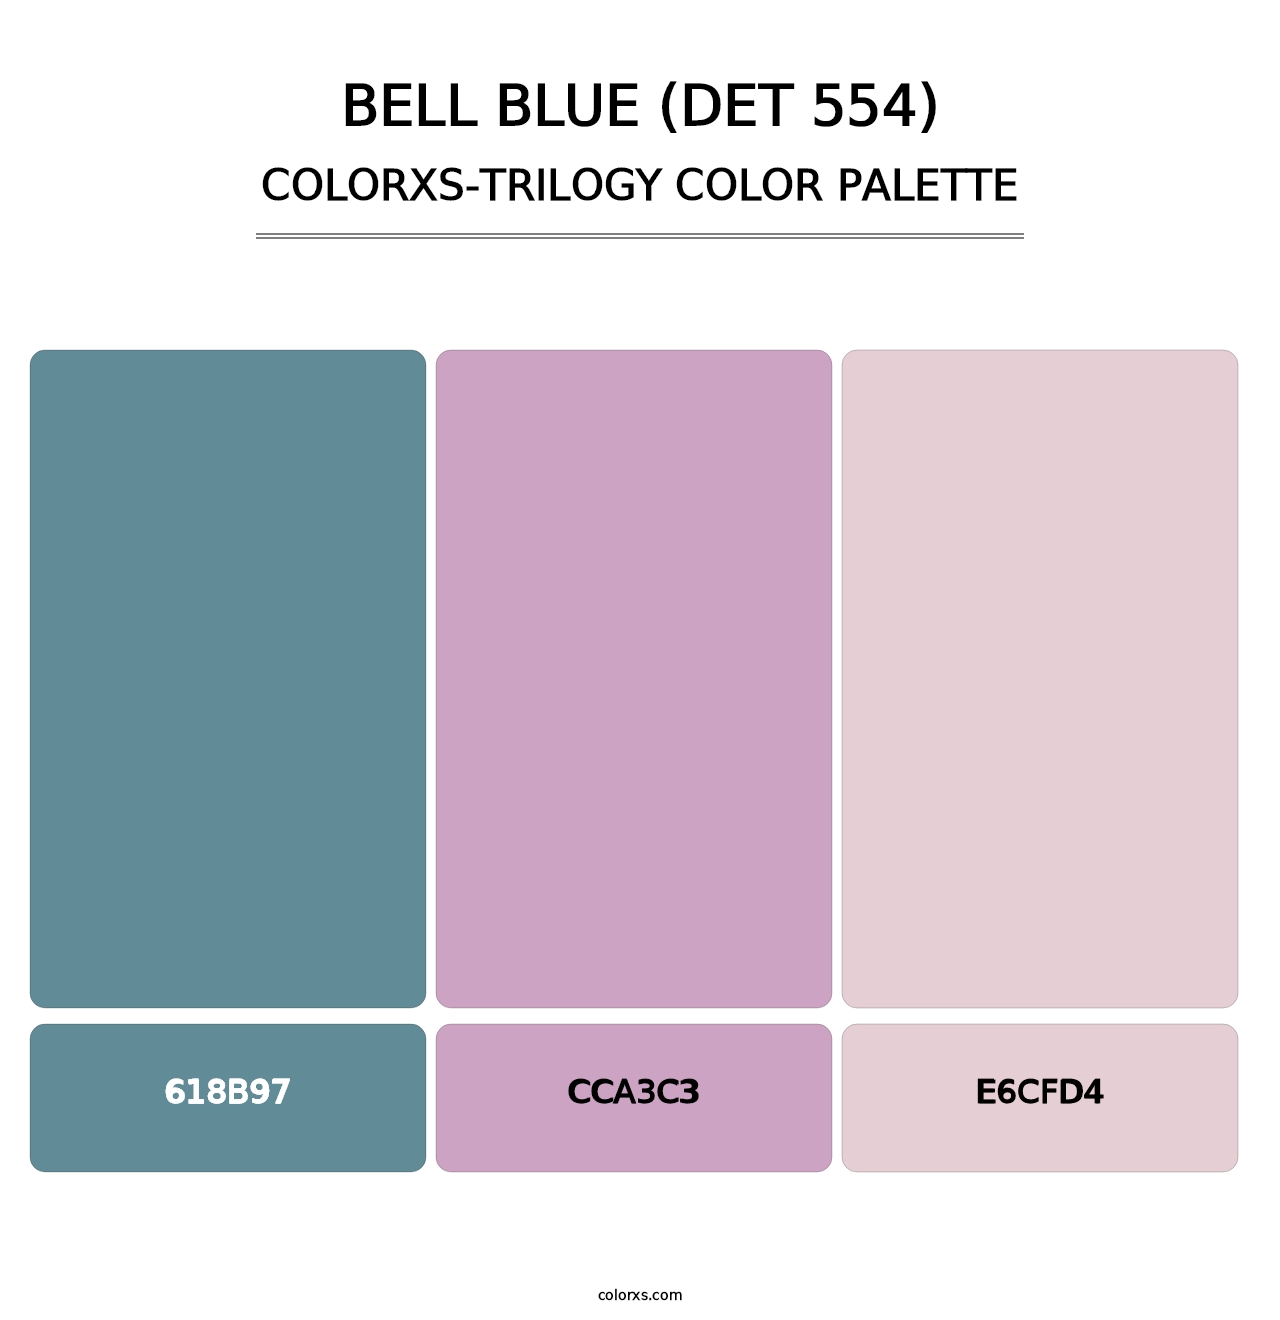 Bell Blue (DET 554) - Colorxs Trilogy Palette